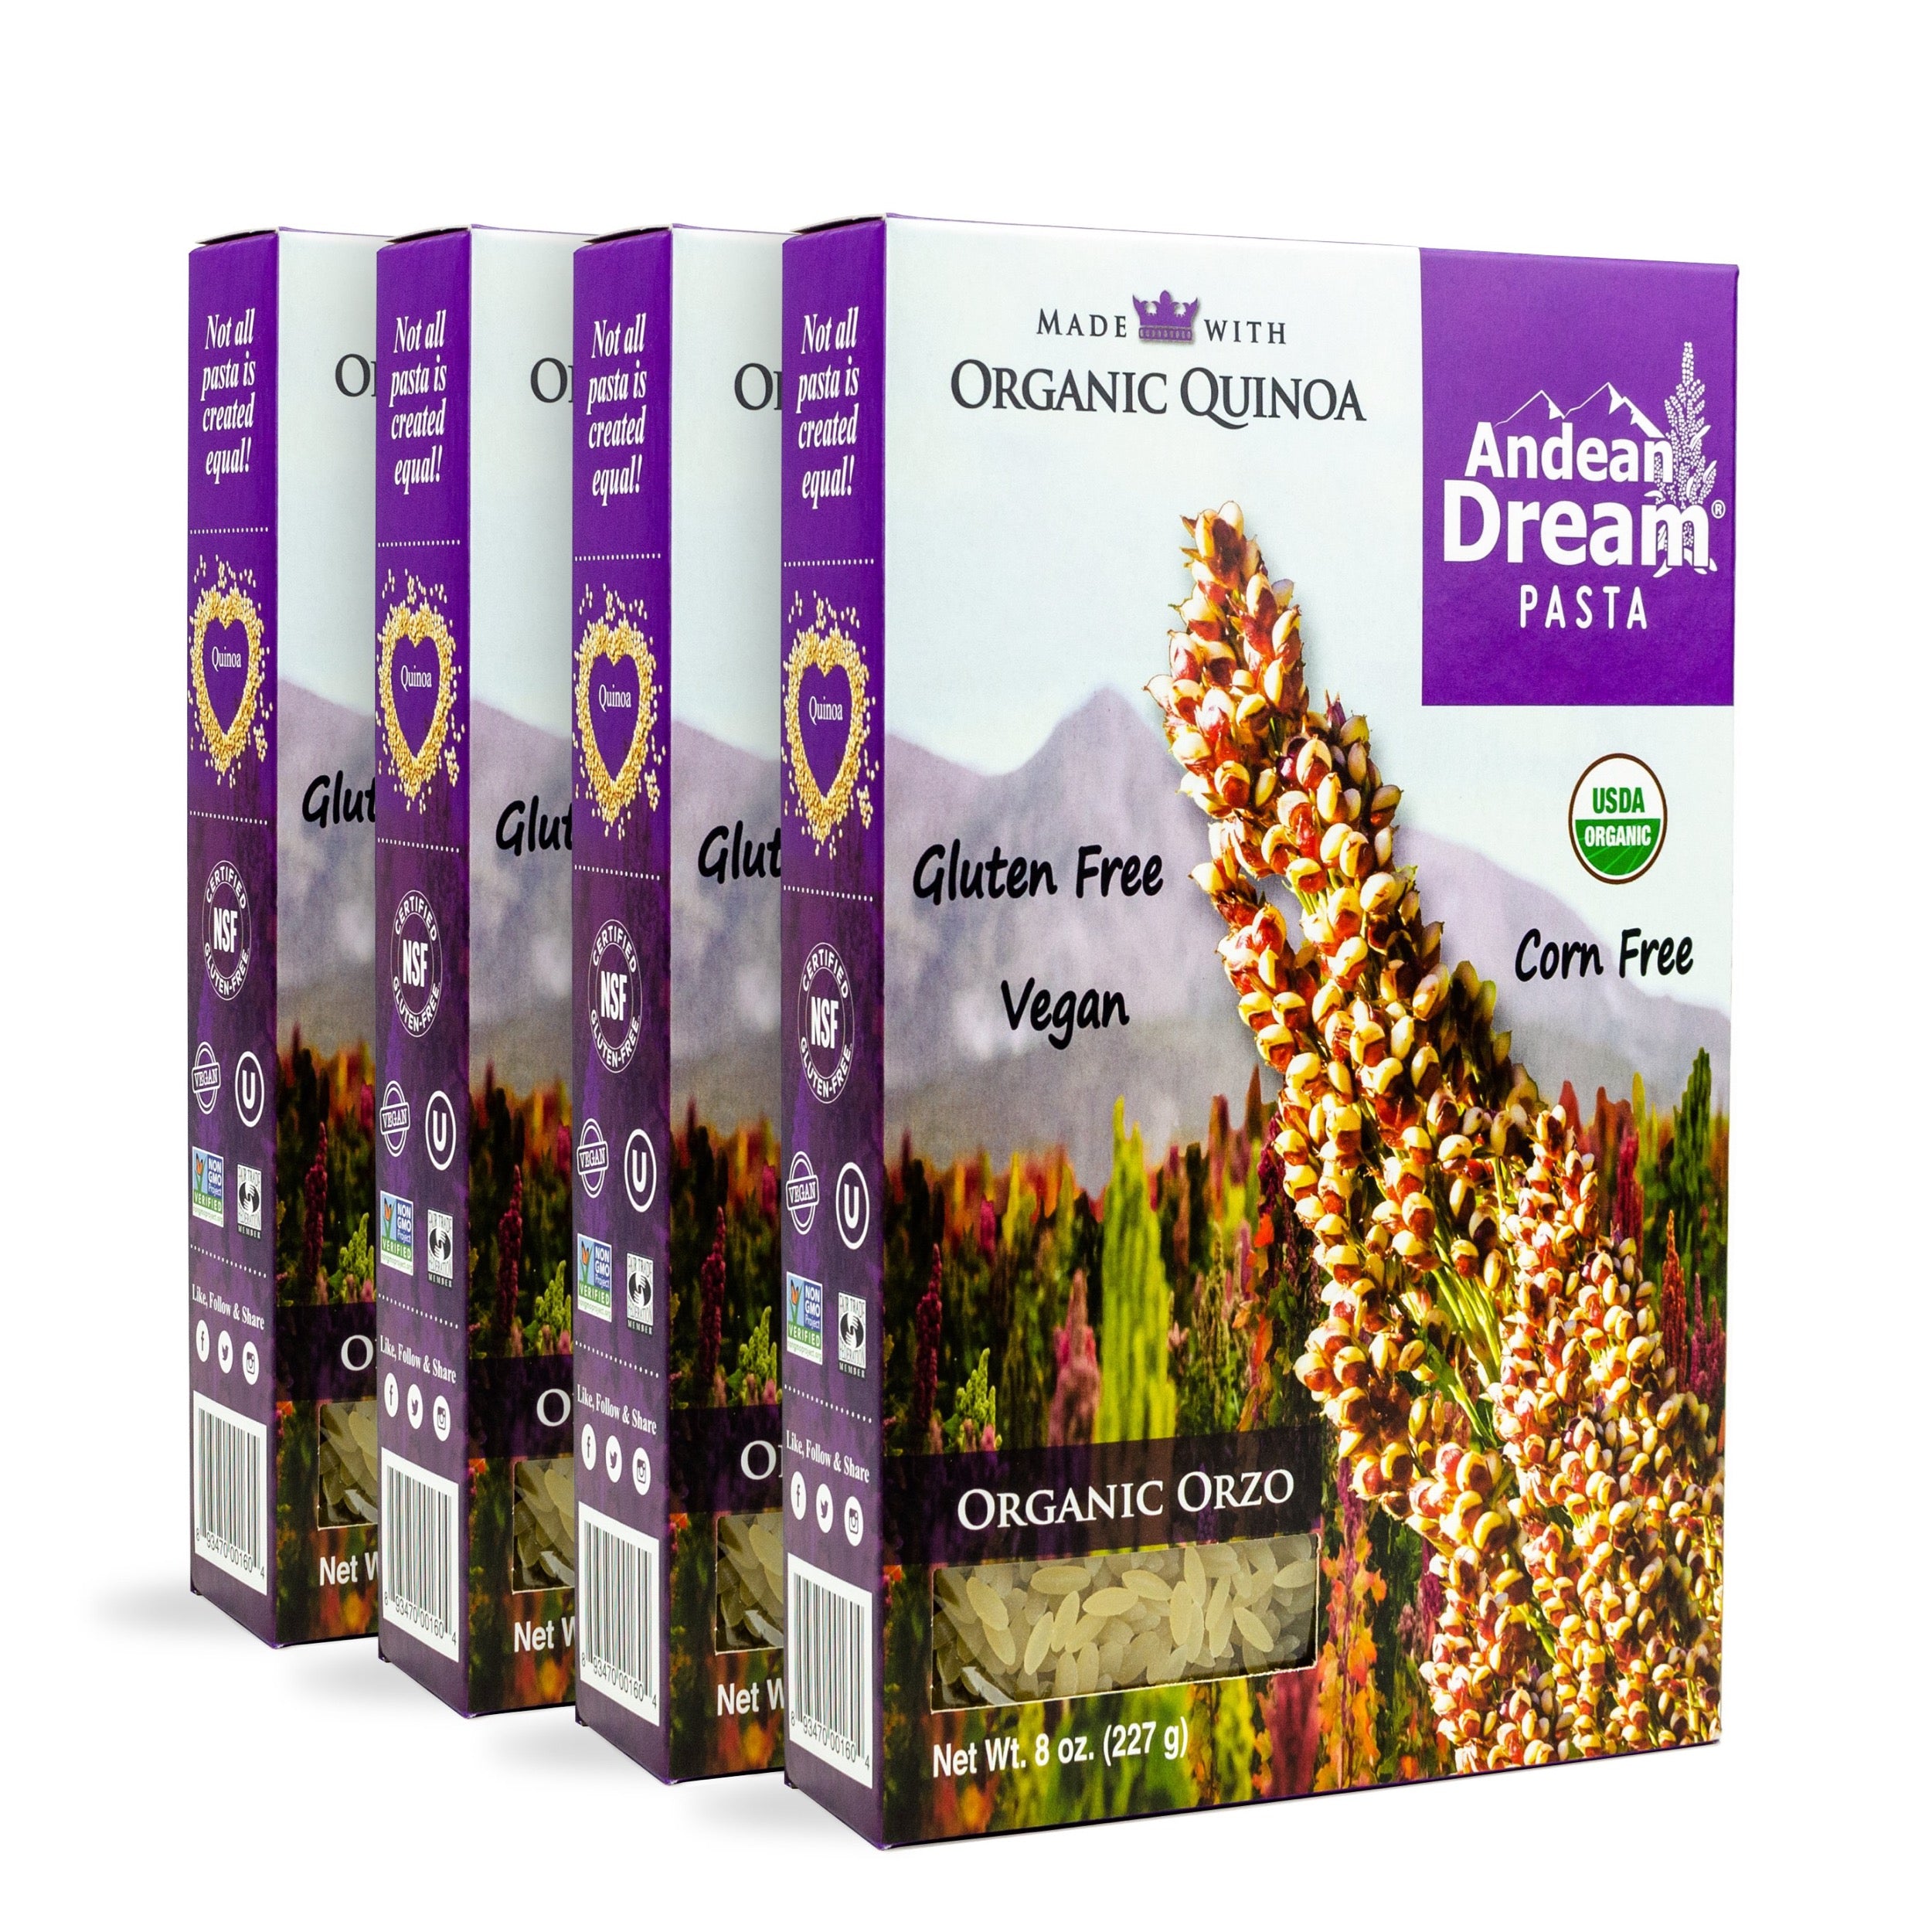 Andean Dream Gluten of Pasta Orzo Free Organic Quinoa Case 12 oz. 